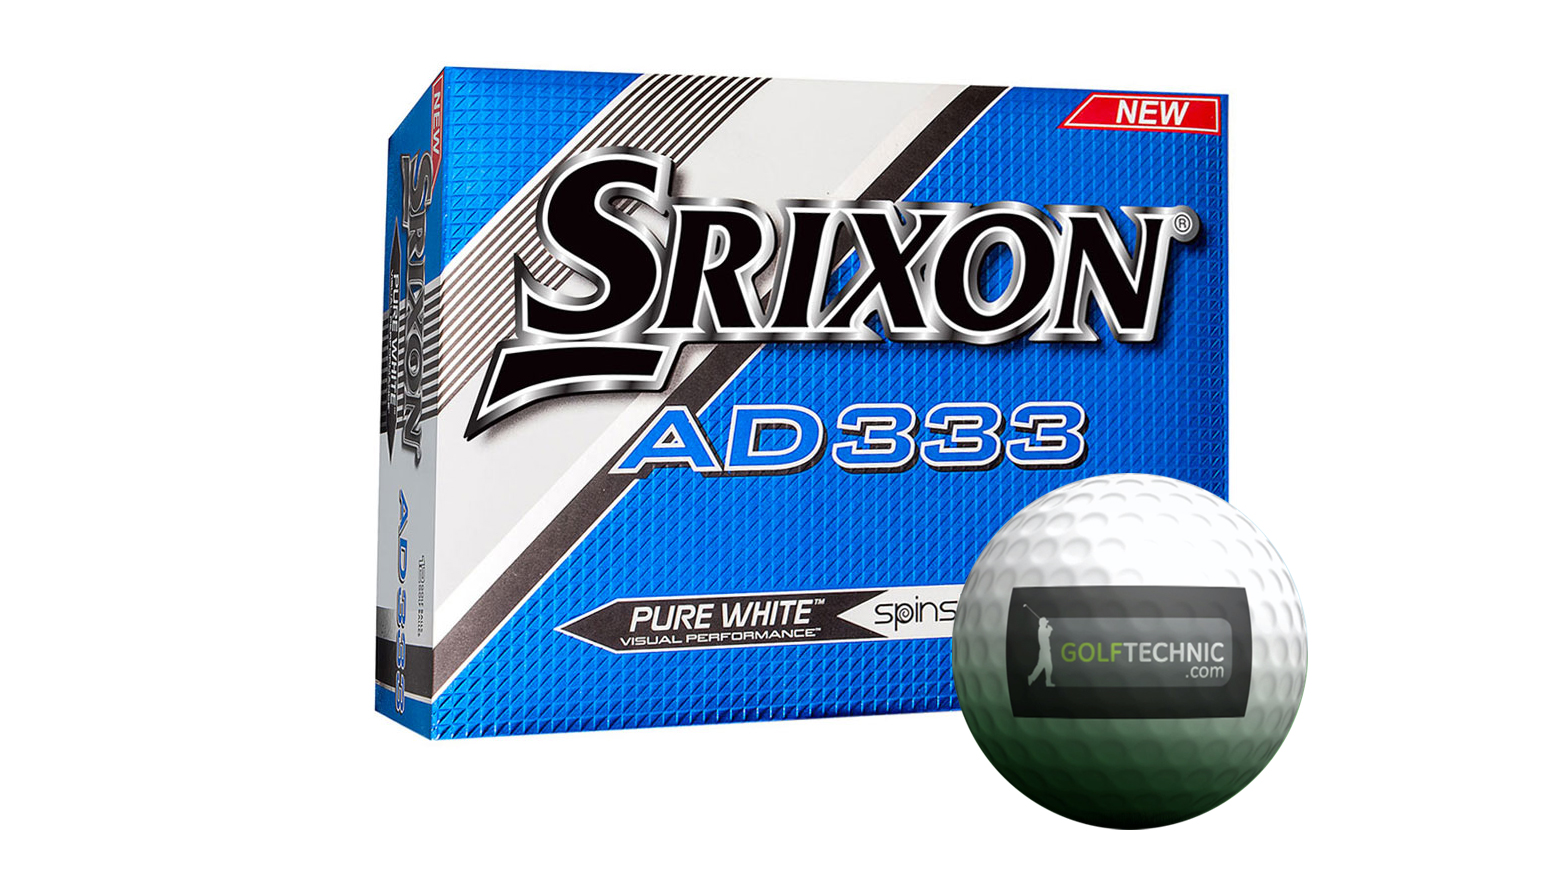 Balles de golf Srixon AD 333